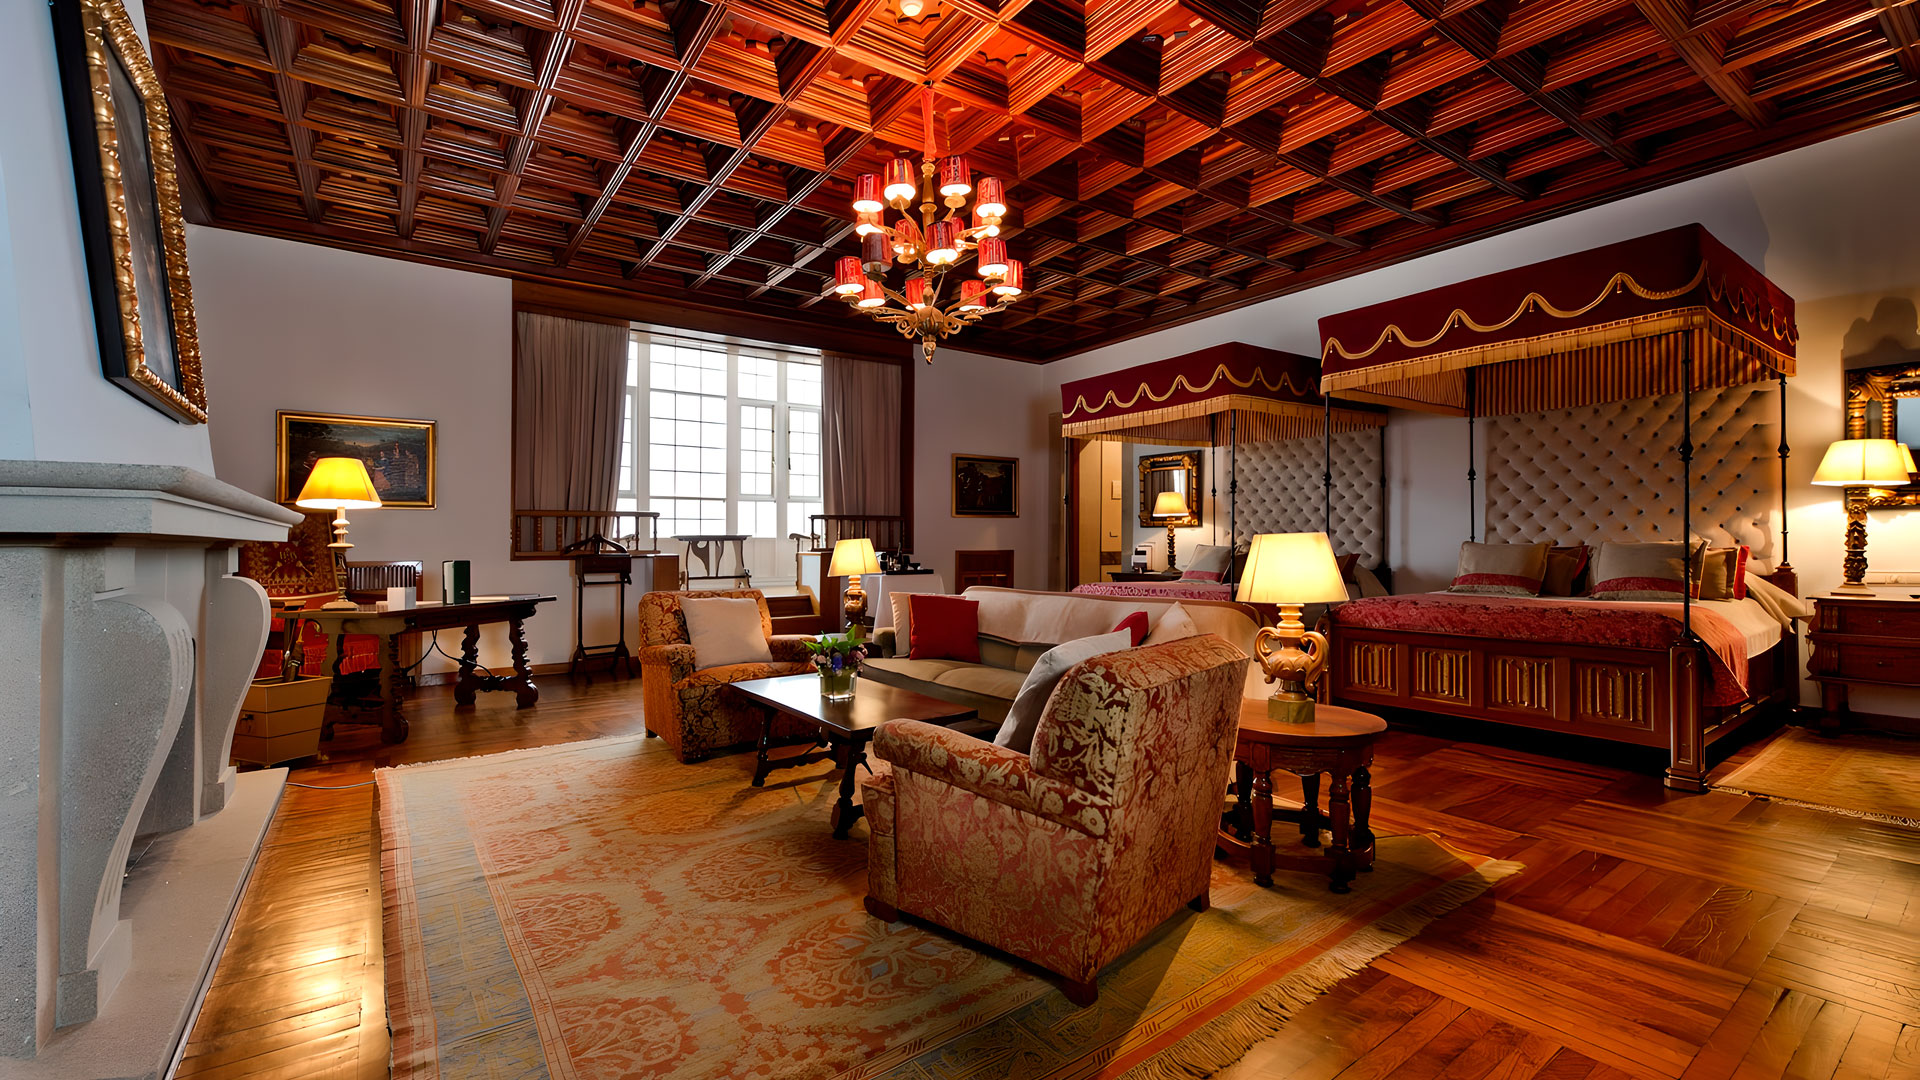 Hotels of the world: Hostal dos Reis Catolicos, Santiago de Compostela, Galicia